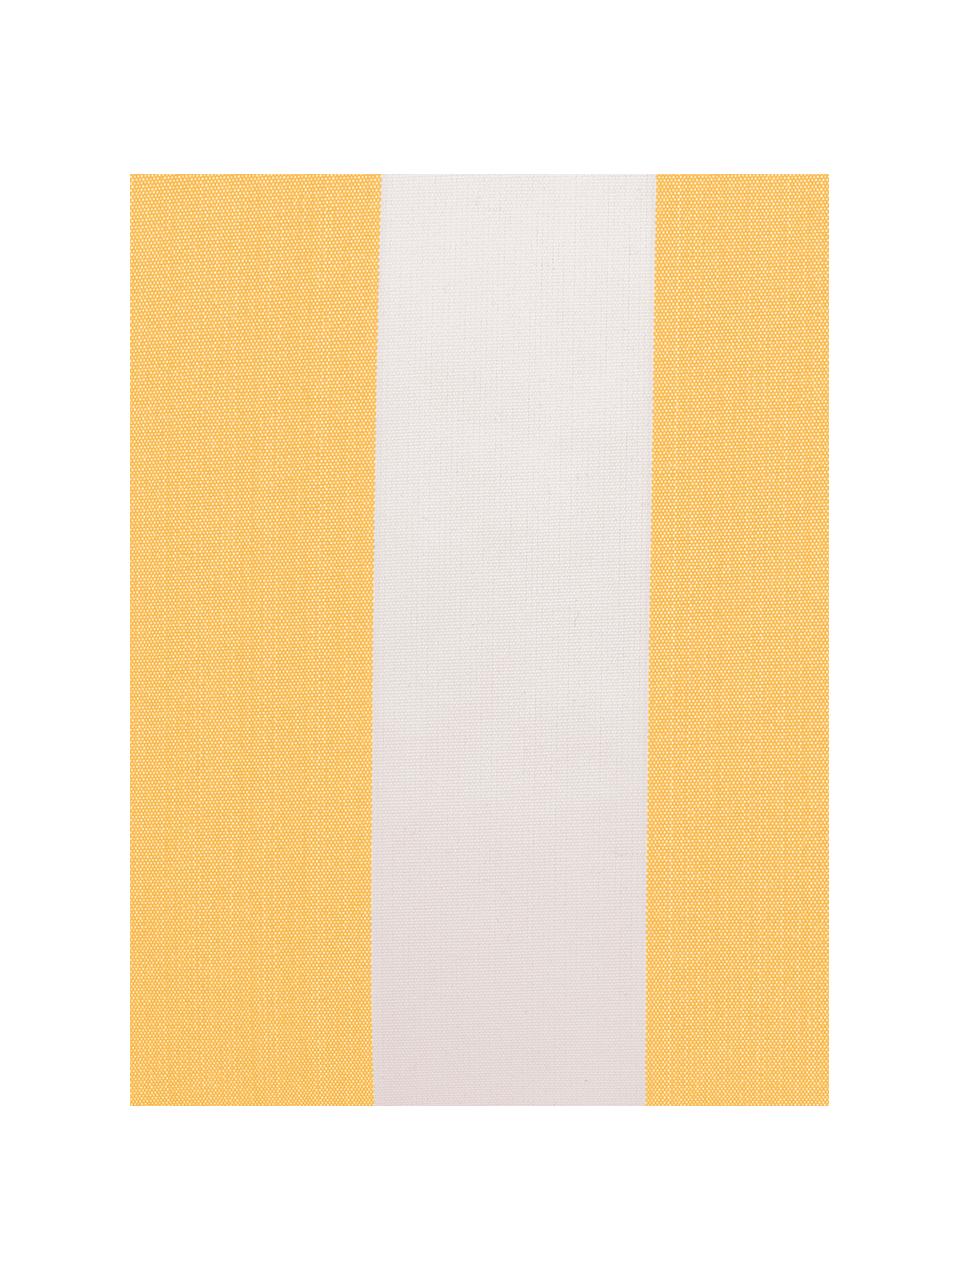 Gestreepte outdoor kussenhoes Santorin in wit/geel, 100% polypropyleen, Teflon® gecoat, Geel, wit, 40 x 40 cm